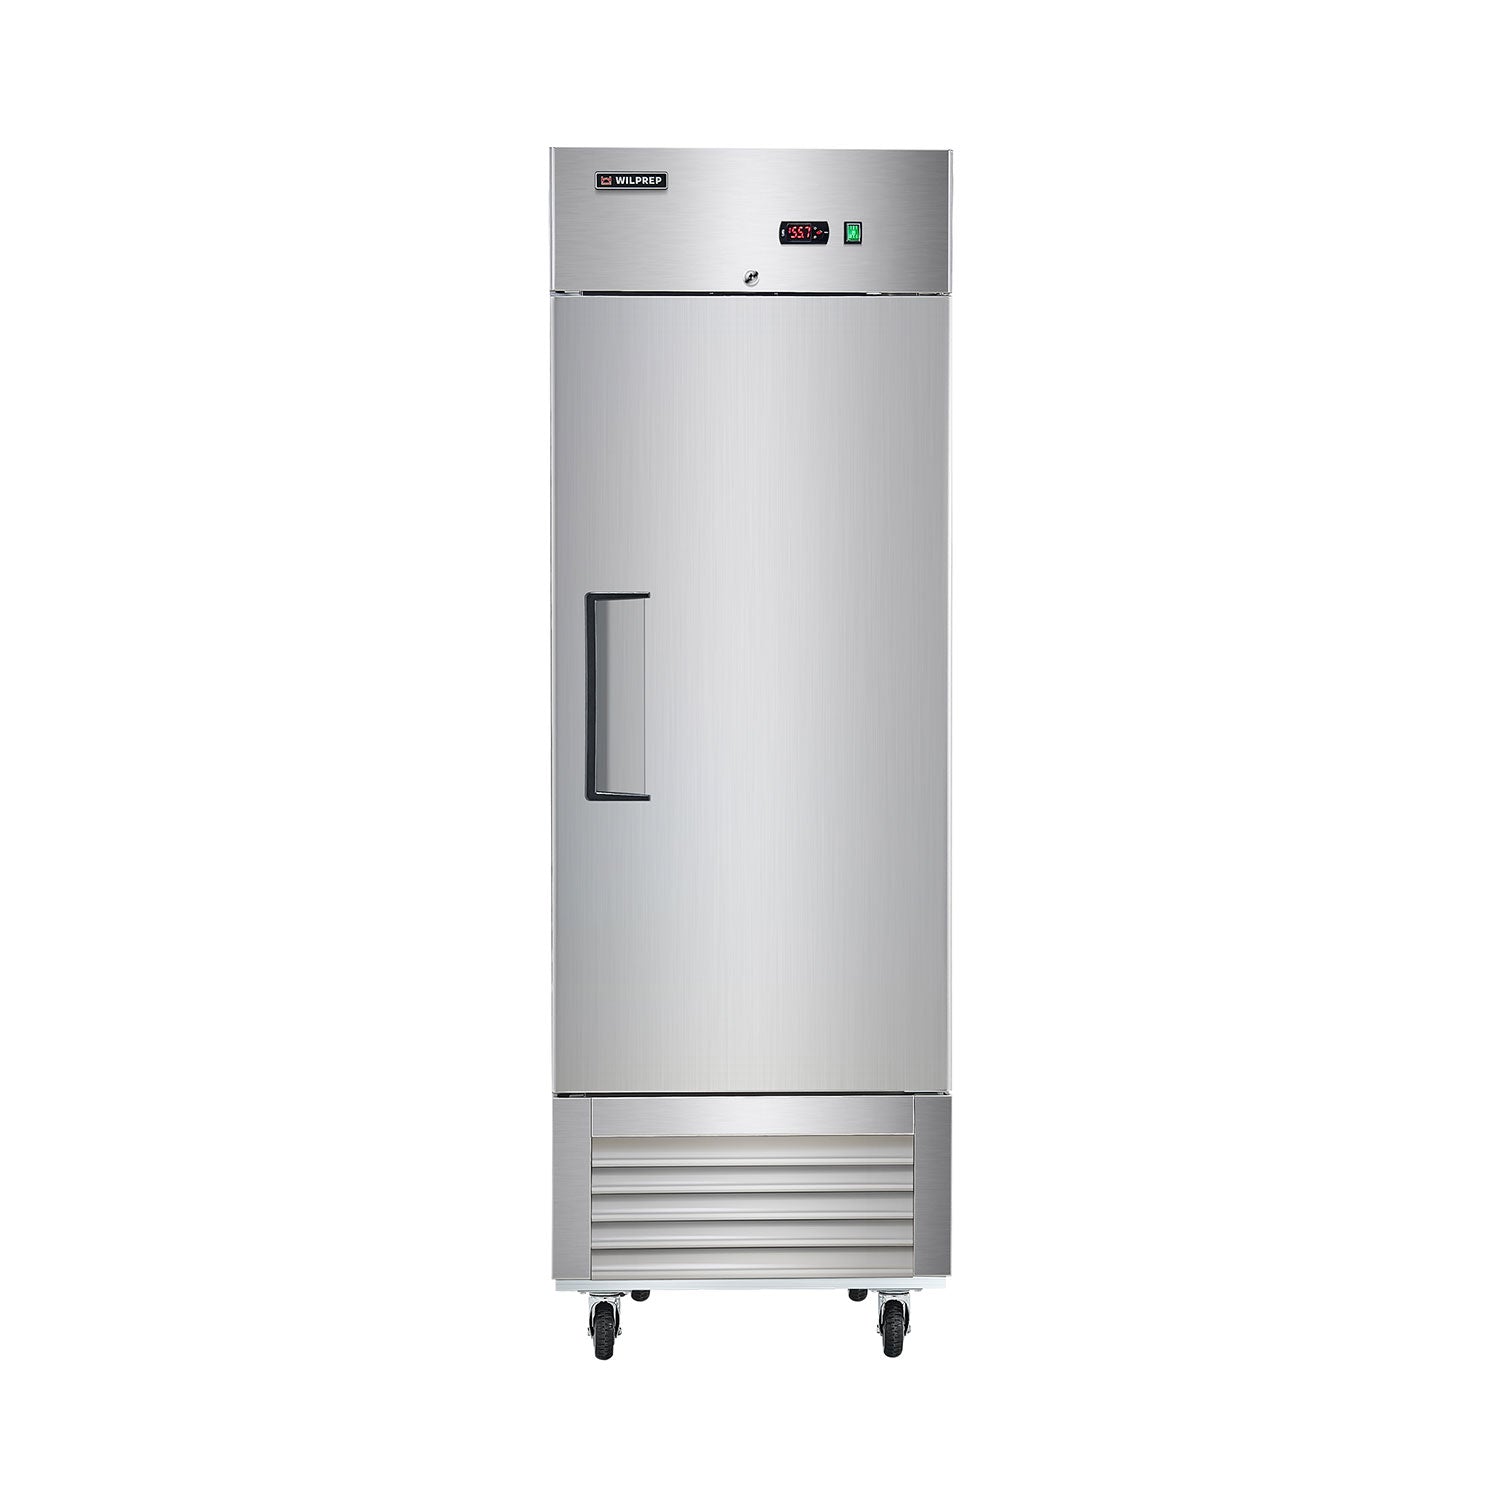 Wilprep 27 Commercial Solid Door Reach-In Freezer